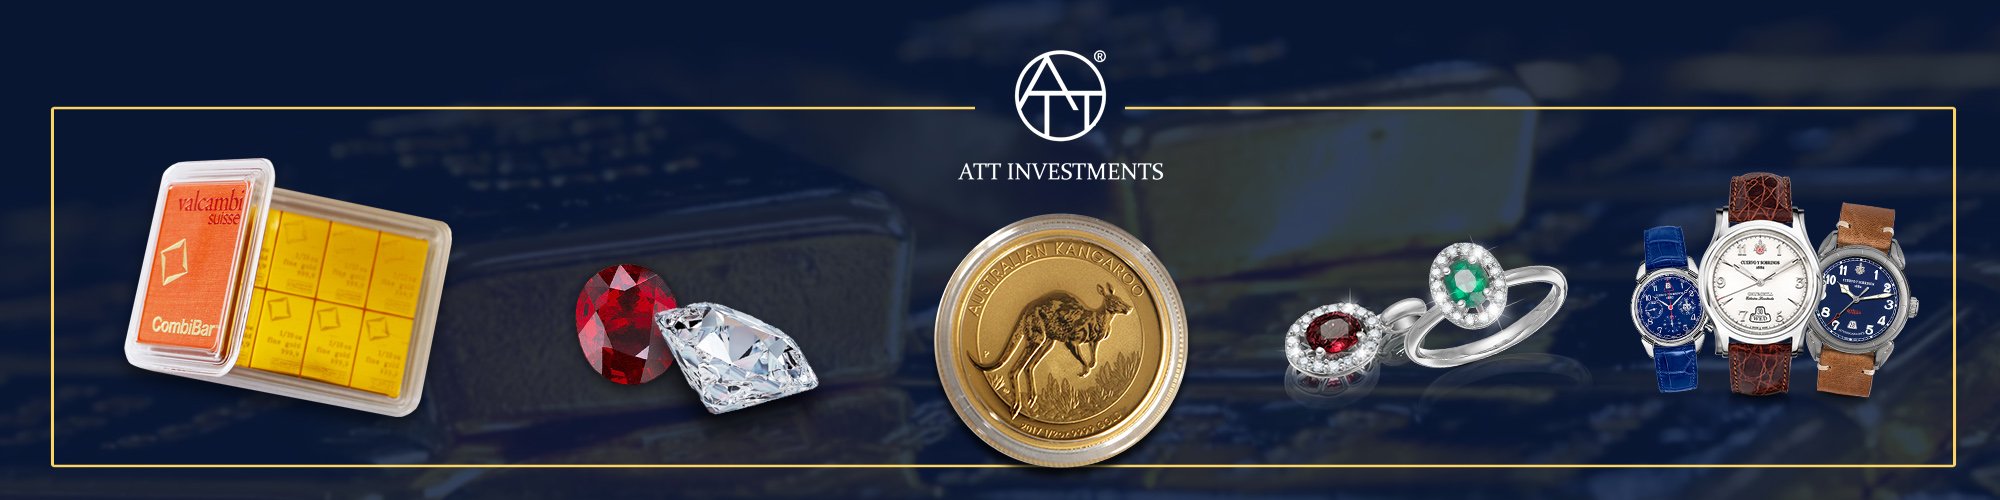 ATT Investments